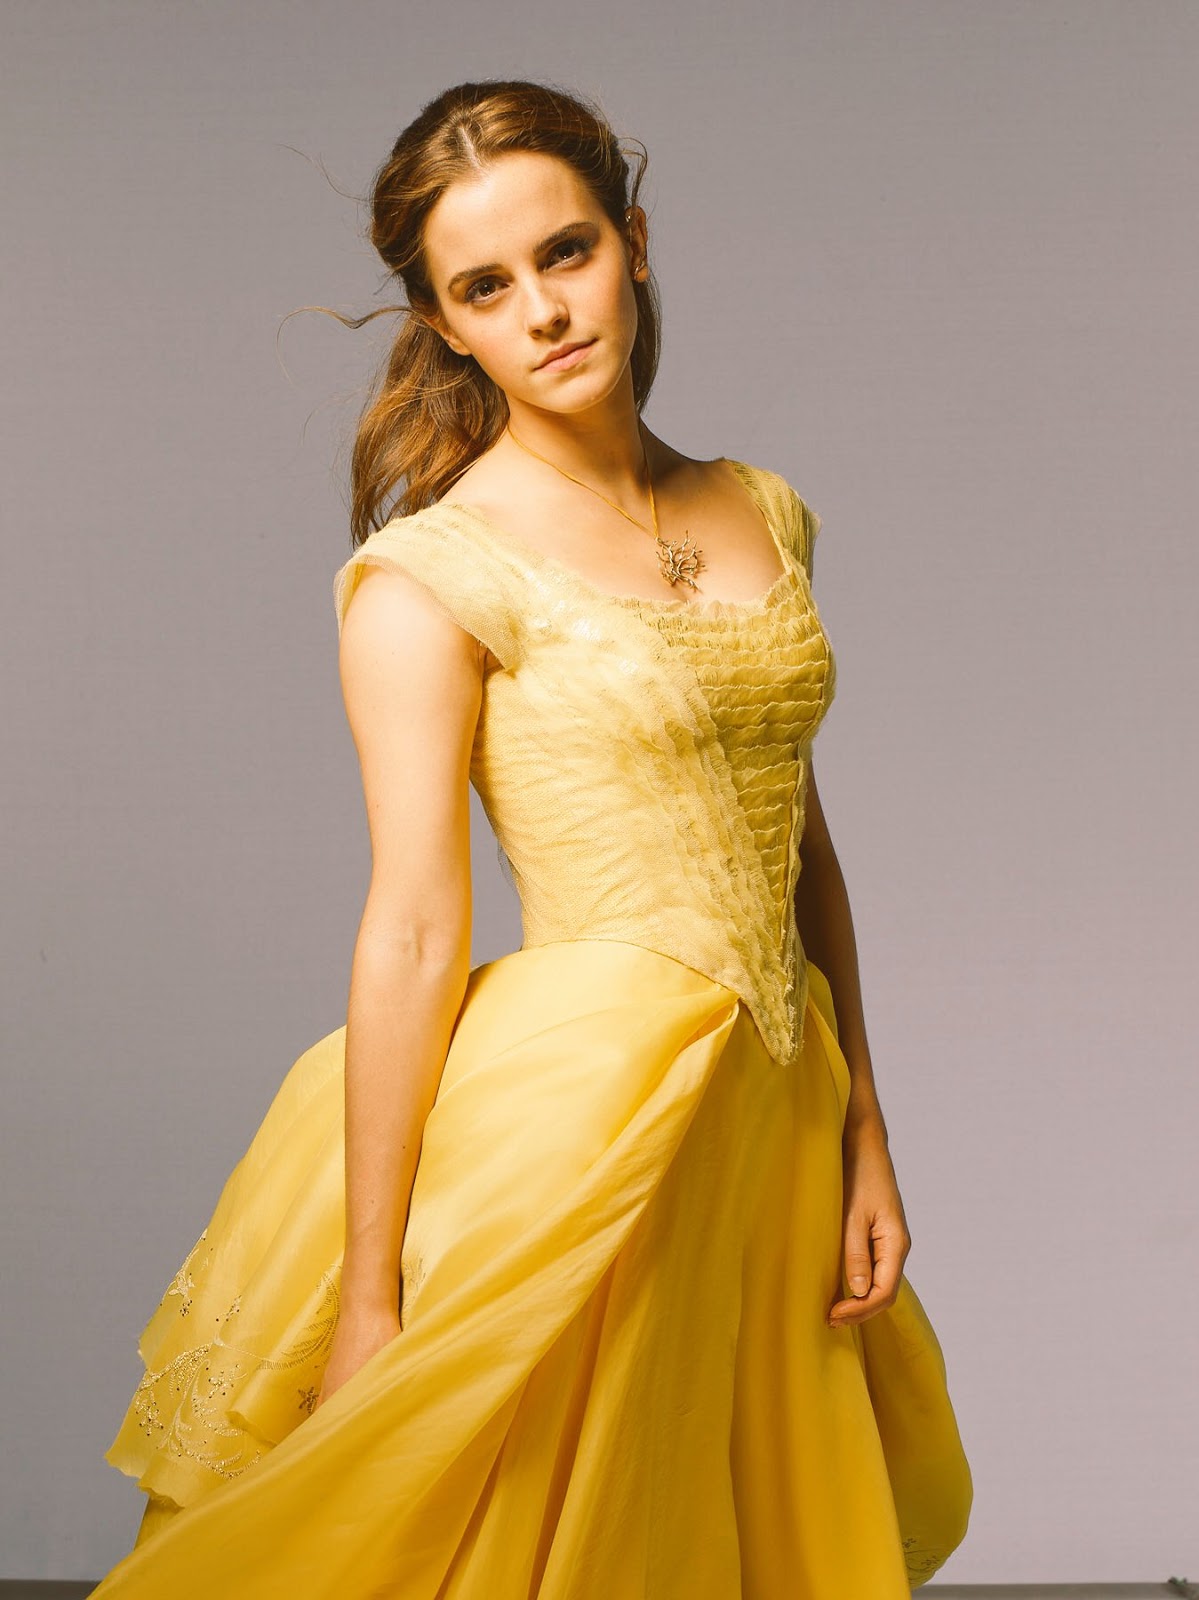 Image Emma Watson As Belle 1 Disney Wiki Fandom Powered By Wikia